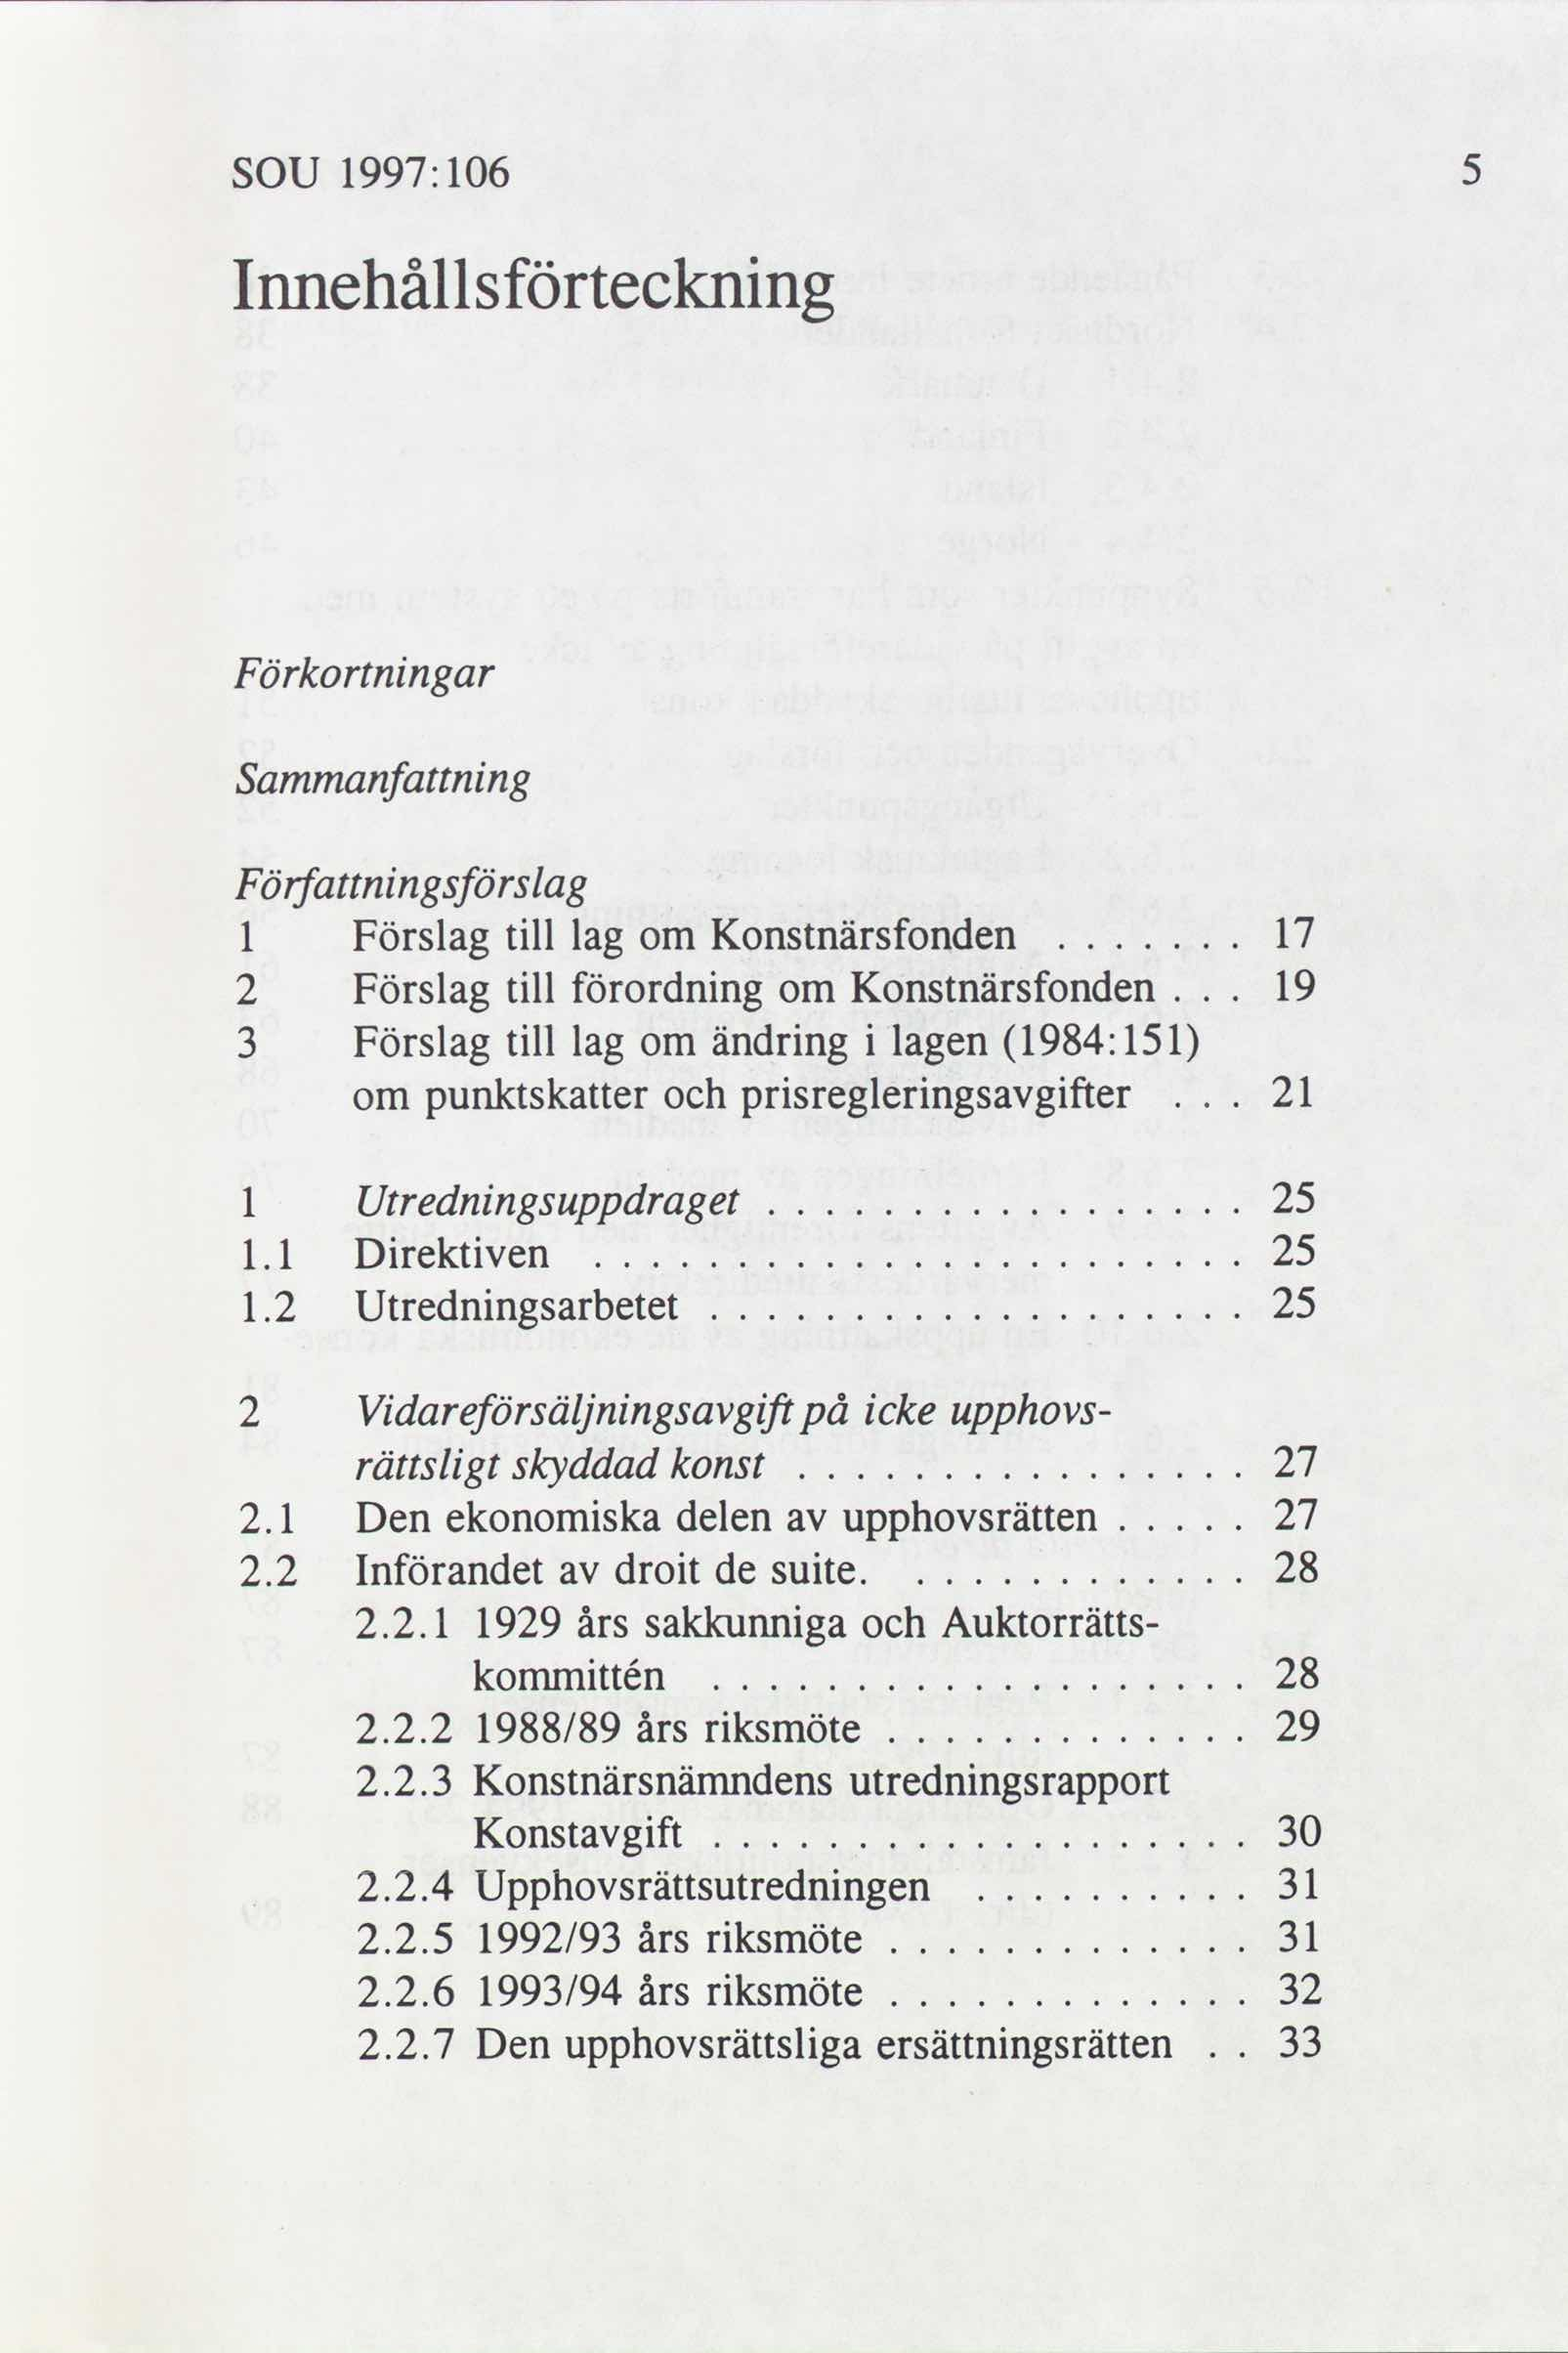 SOU 1997: 106 Innehållsförteckning Förkortningar Sammanfattning Författningsförslag 1 Förslag till lag om Konstnärsfonden 17....... 2 Förslag till förordning om Konstnärsfonden 19.